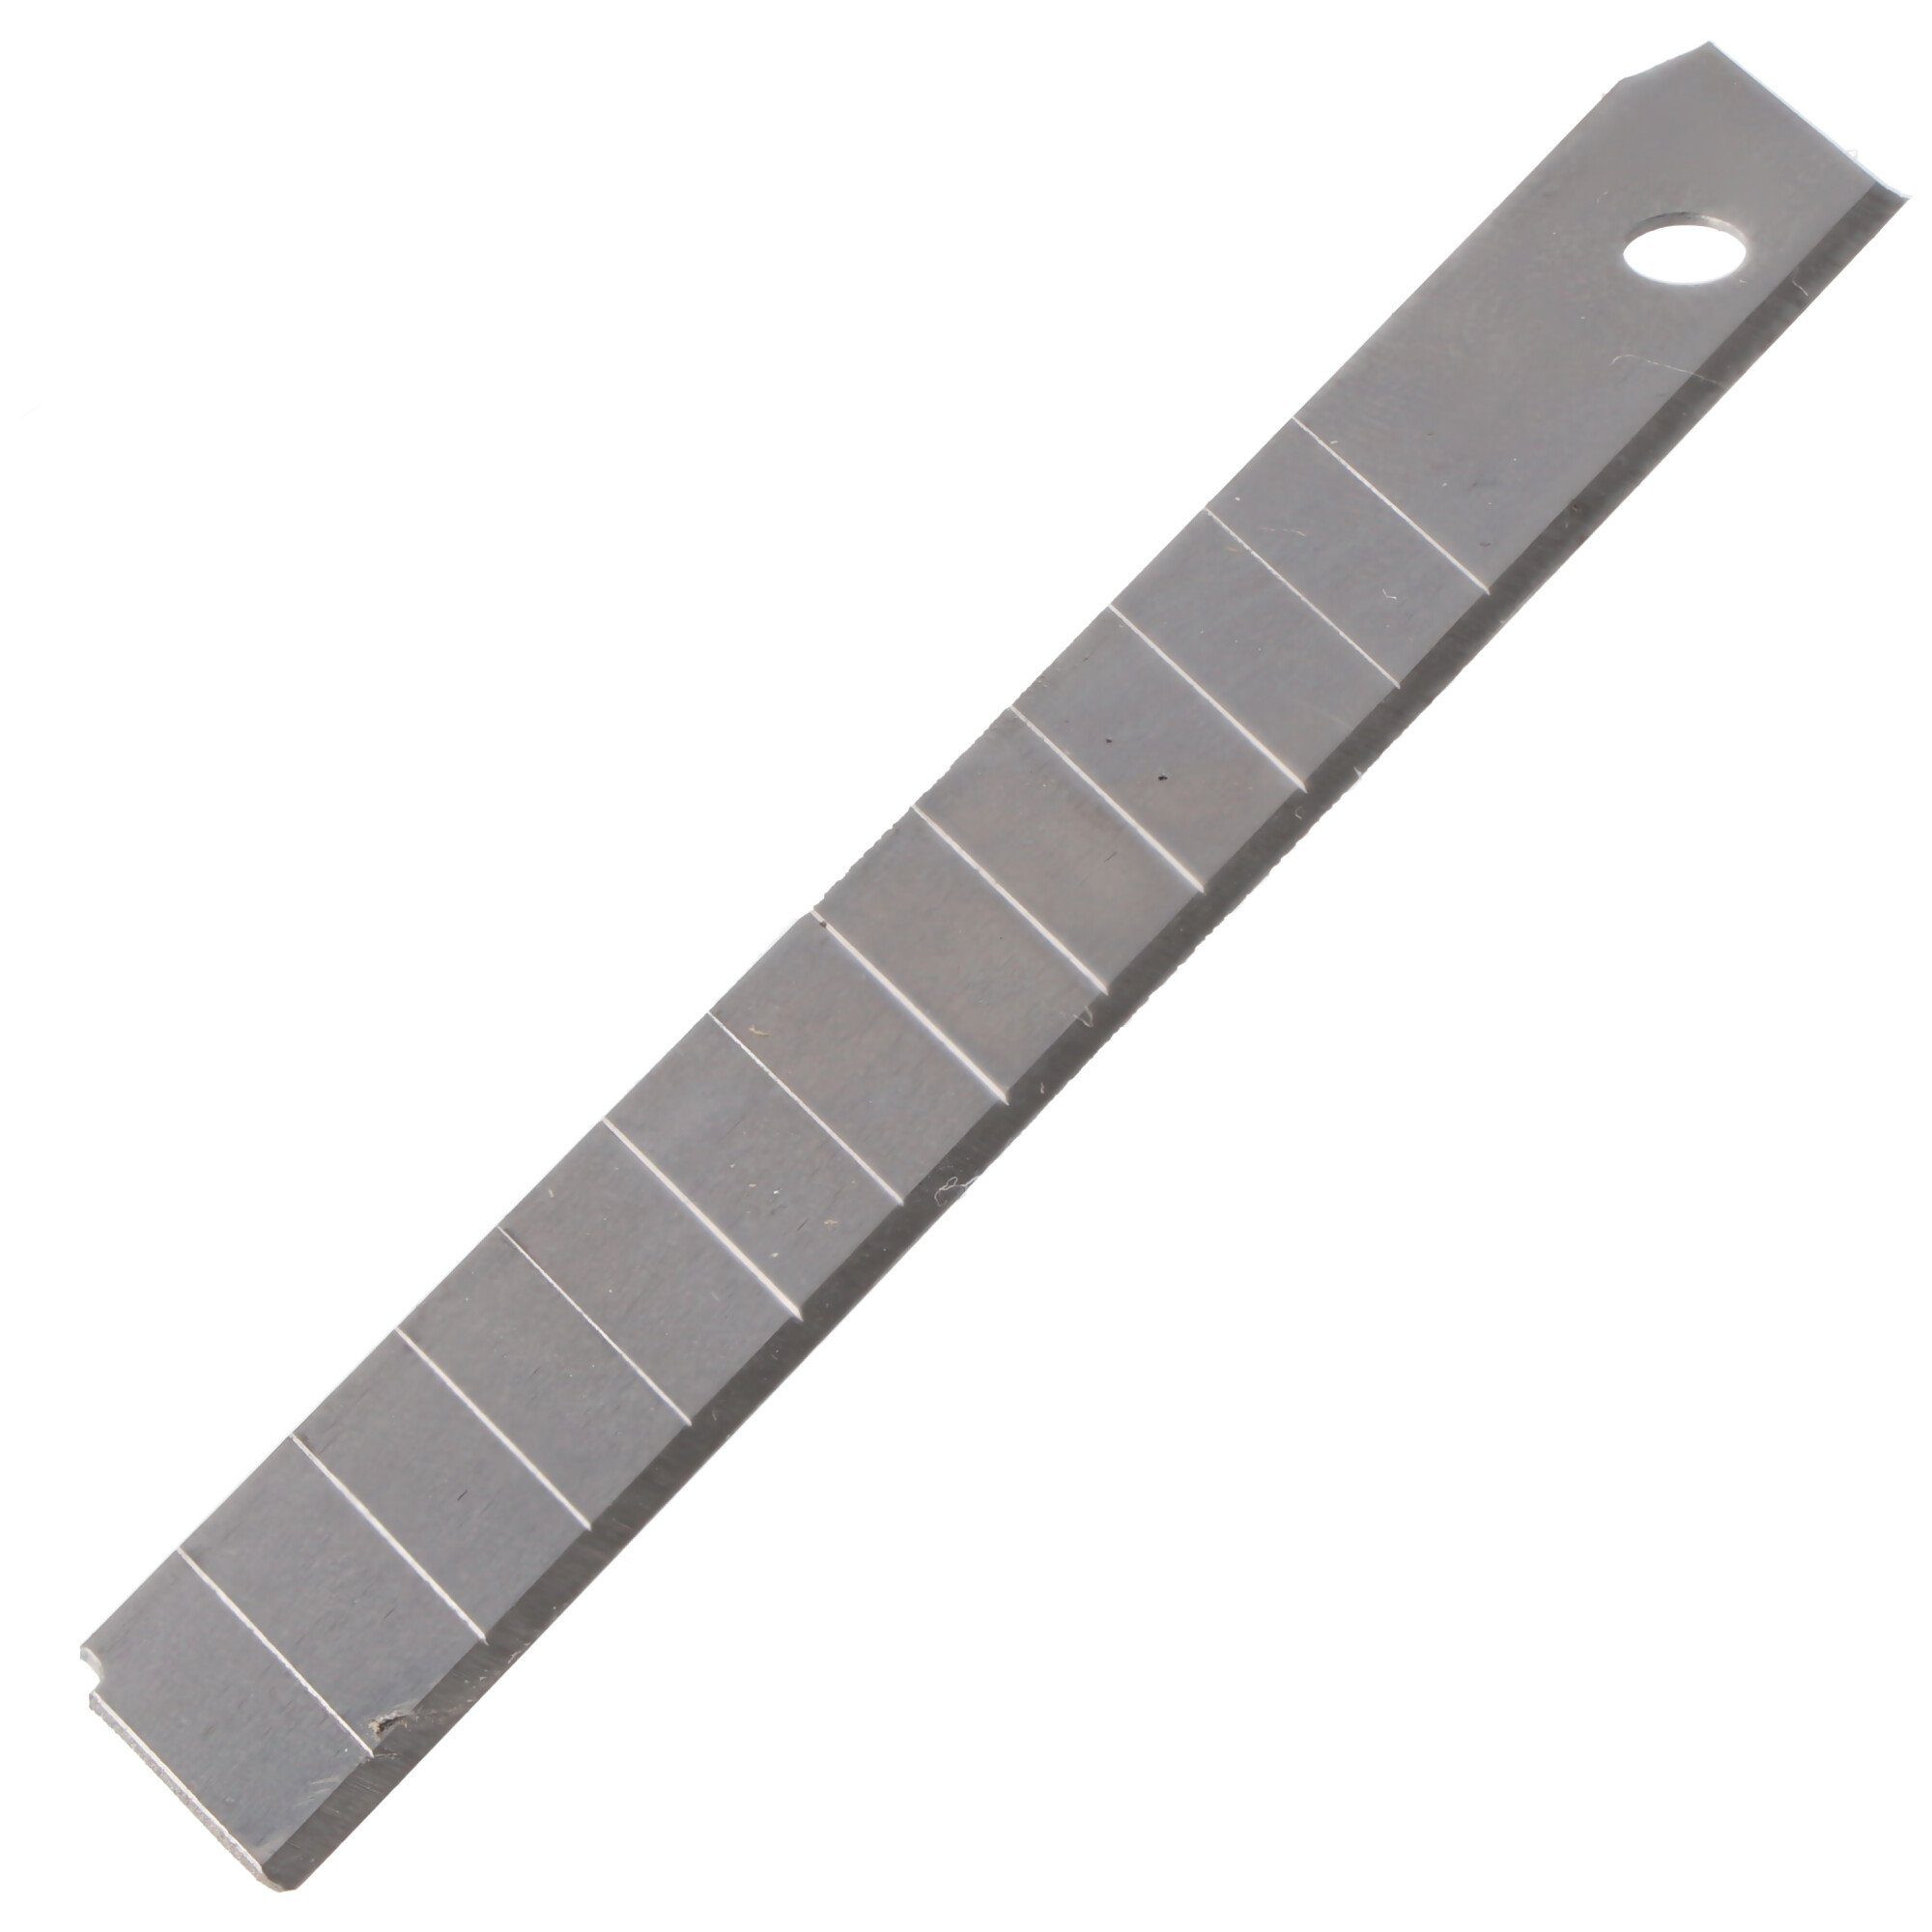 9mm, handelsübliche WEDO alle Ersatzklingen Cuttermesser fast für Cutter-Abbrechklingen